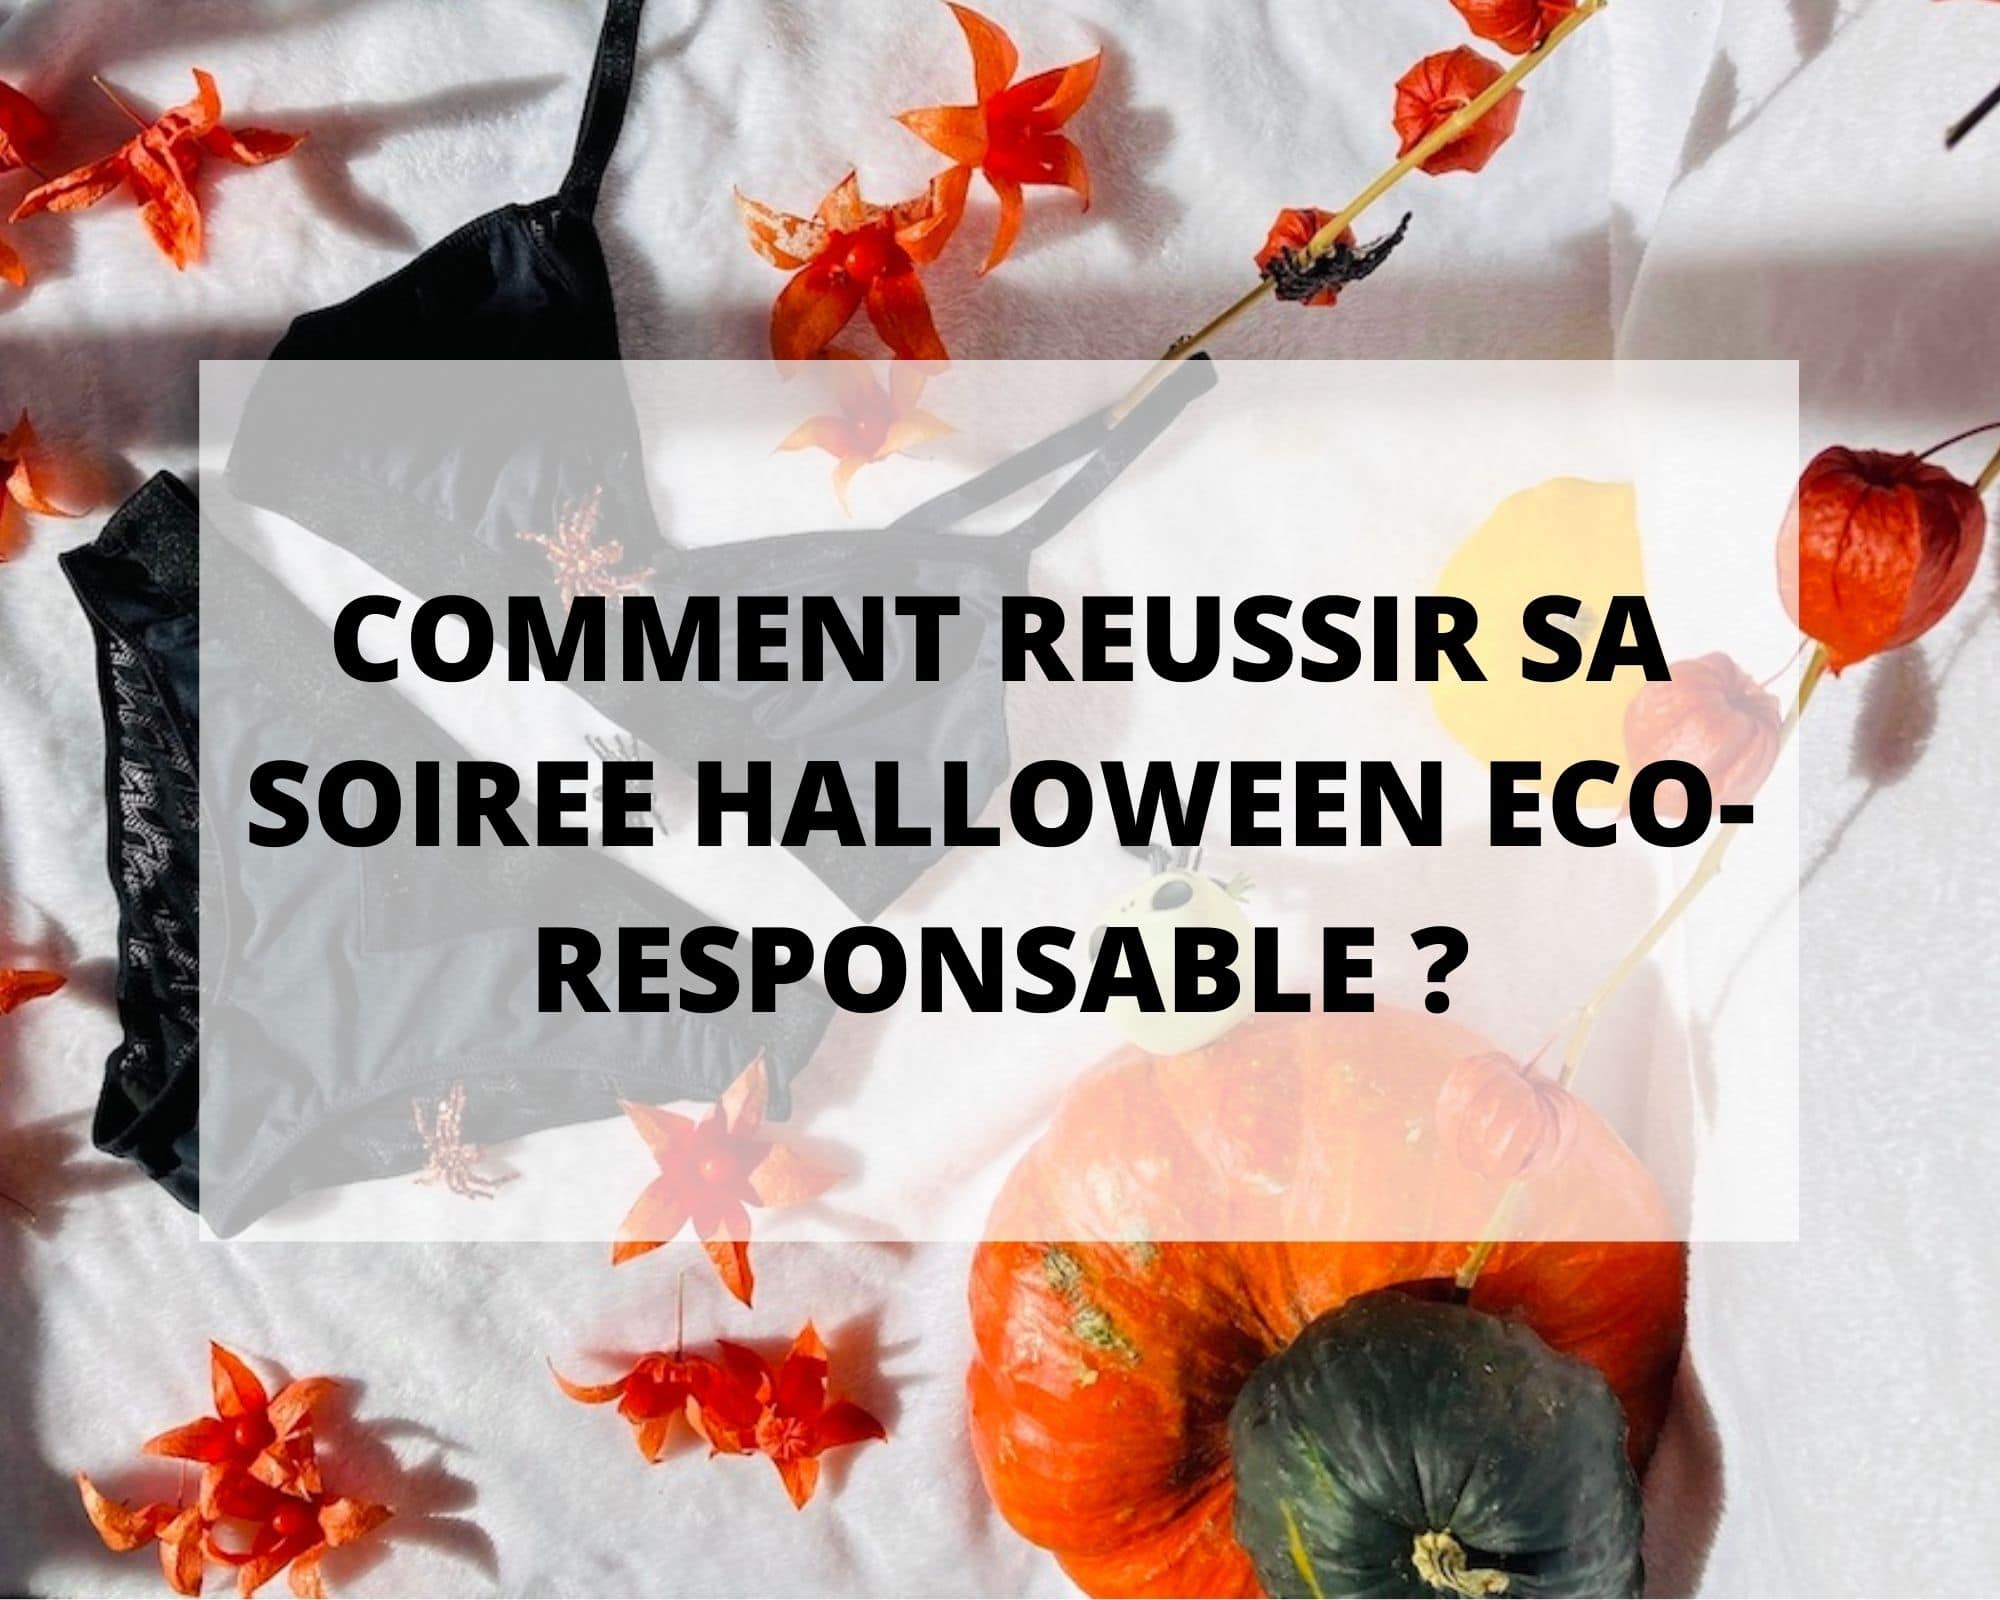 Comment réussir sa soirée Halloween eco-responsable ?